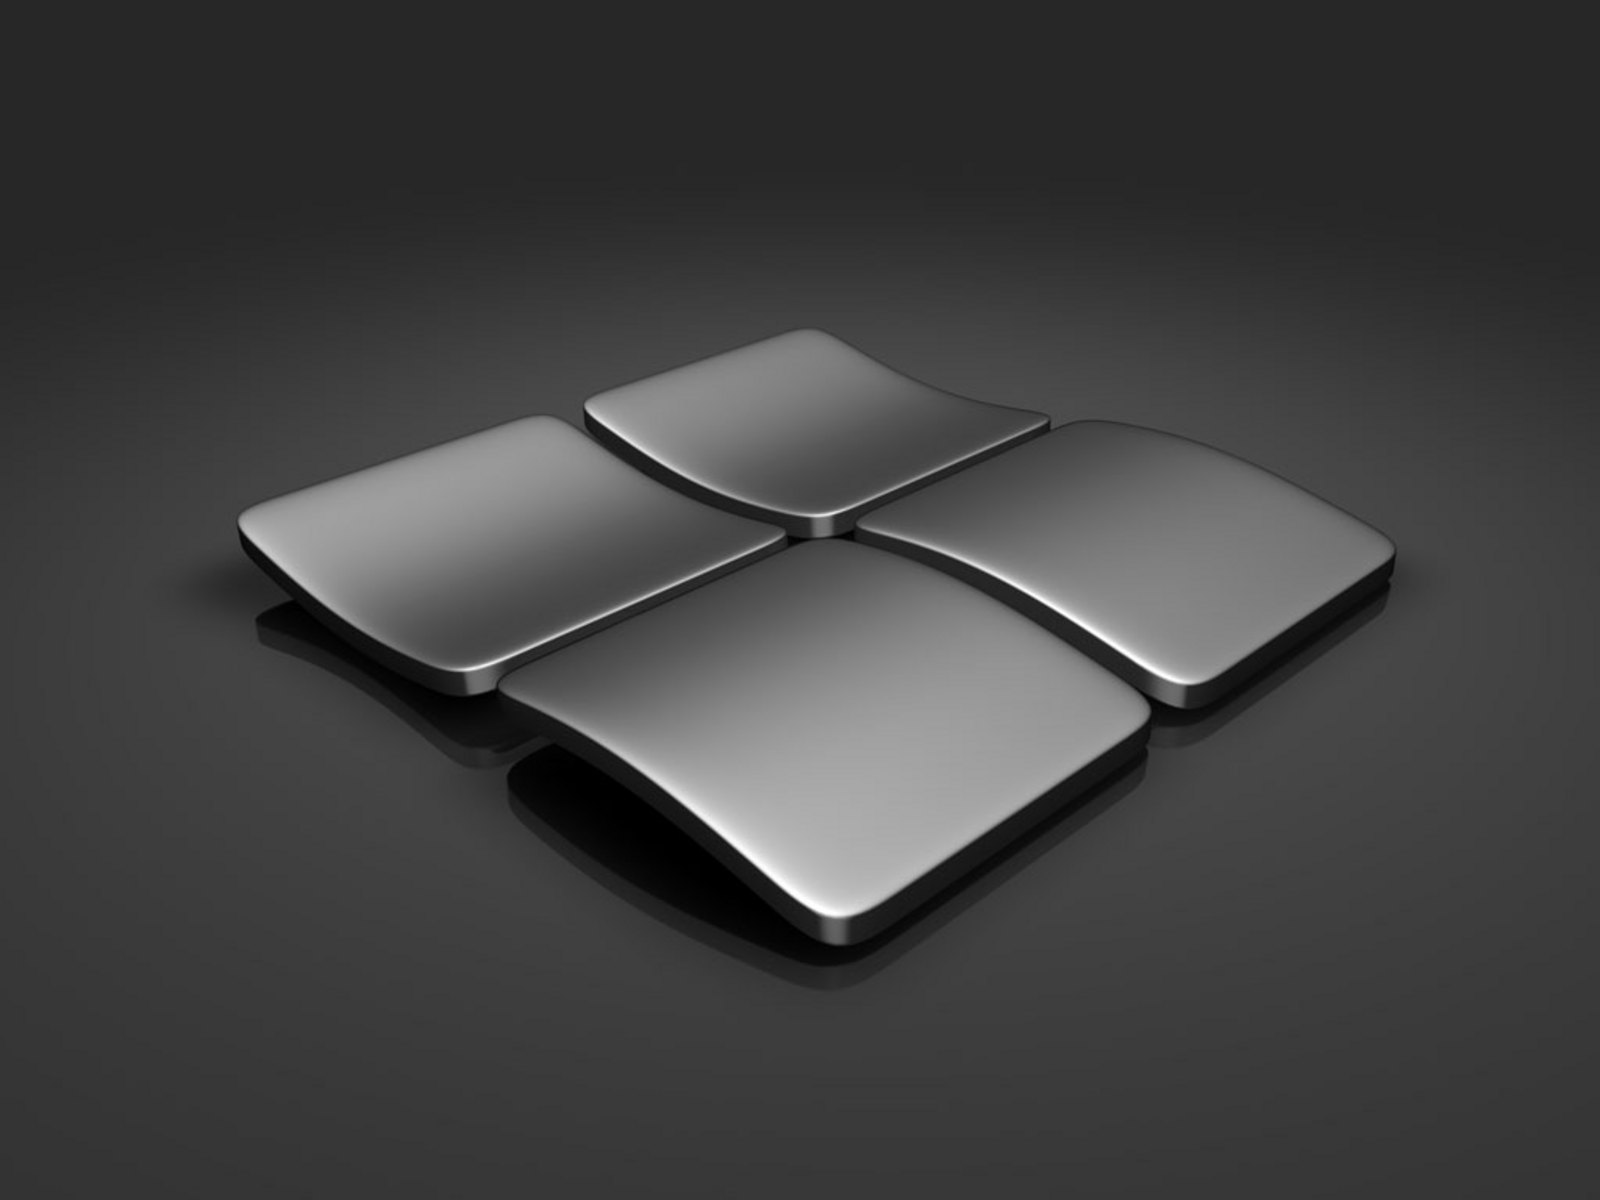 49+] Black Wallpaper Windows 10 - WallpaperSafari